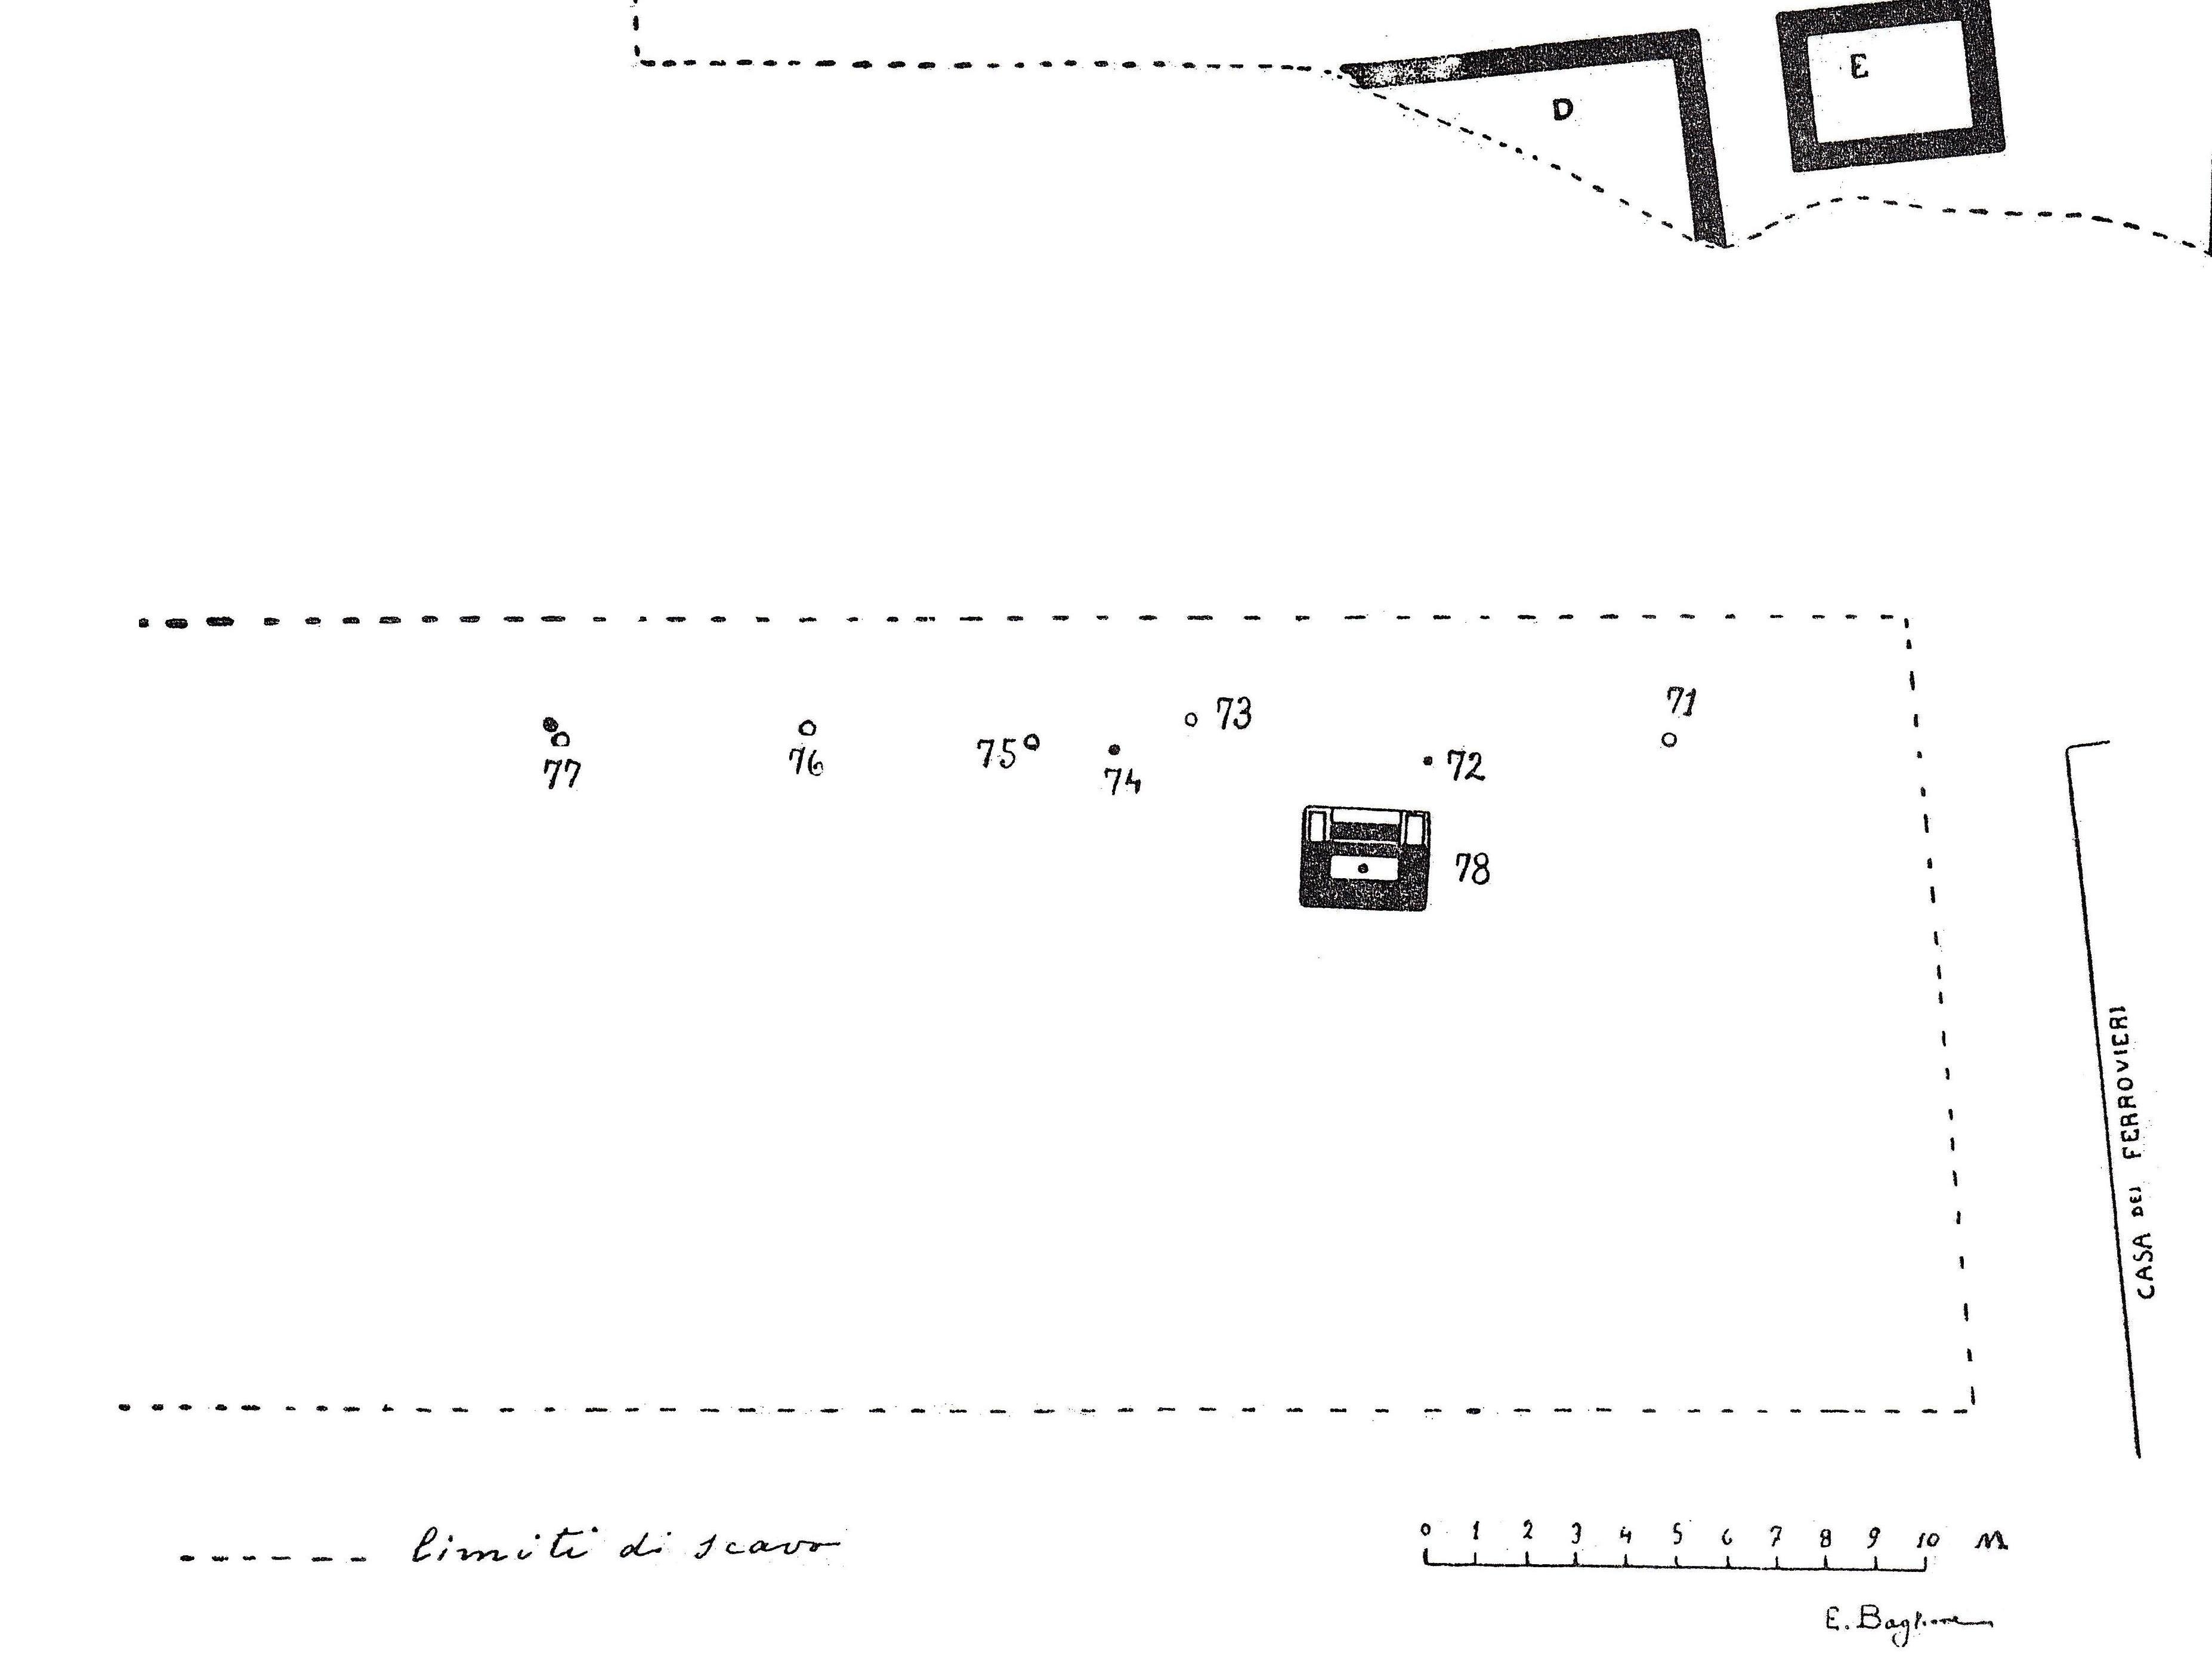 Necropoli di Albintimilium, area a sud recinti D-E, tomba 77 (tomba a incinerazione, area ad uso funerario) - Ventimiglia (IM)  (metà Età romana imperiale)